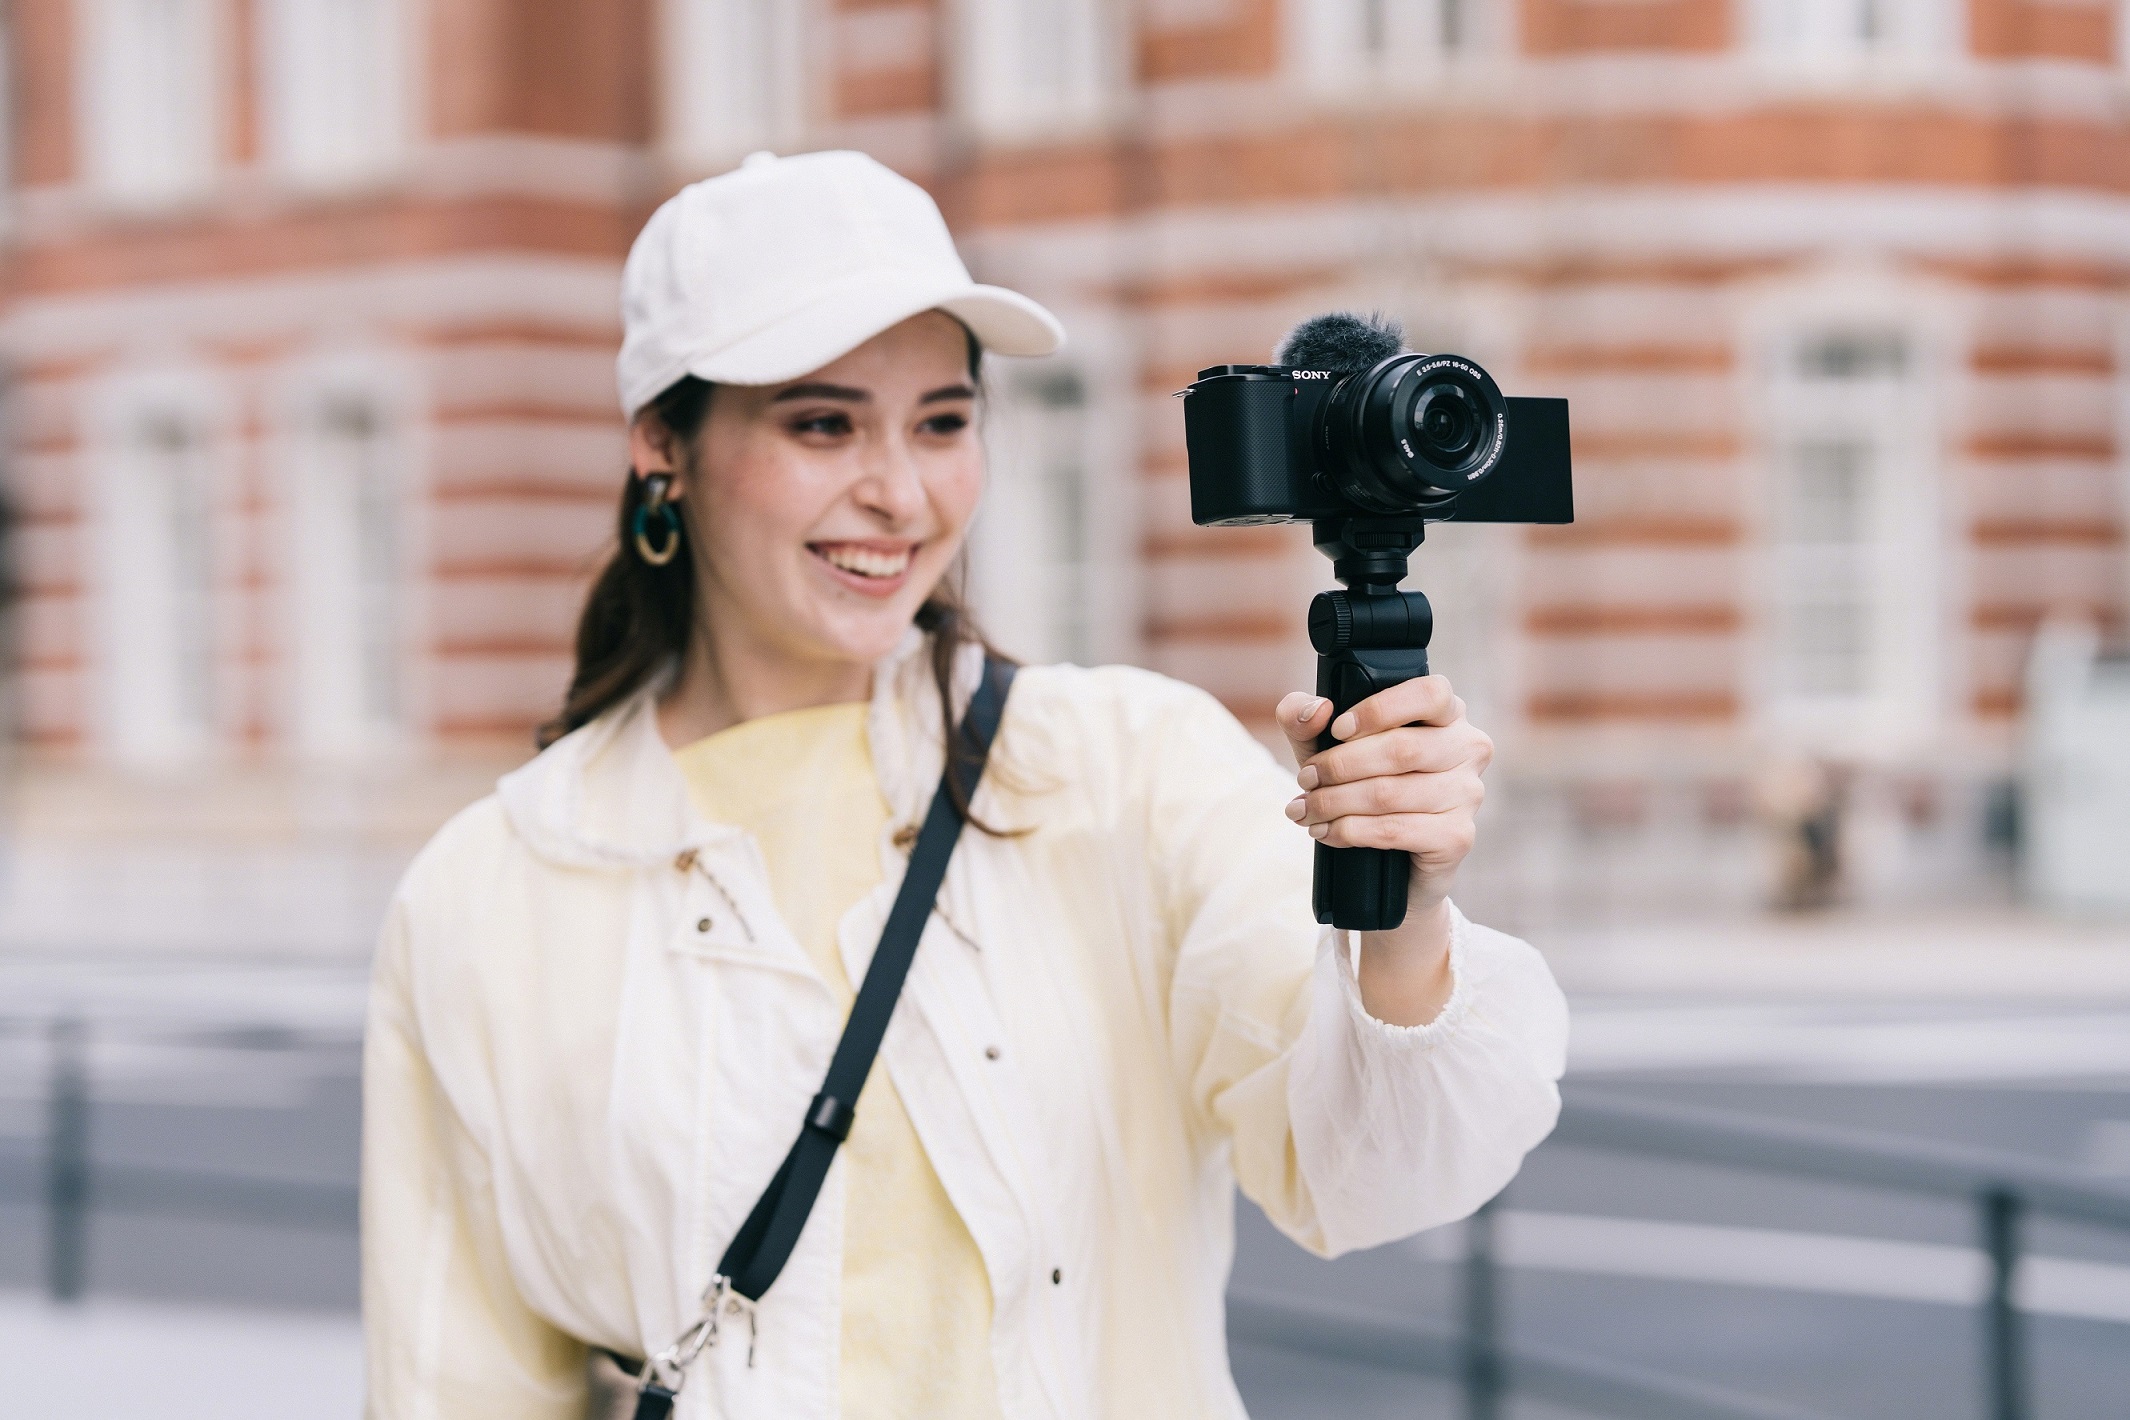 Vlogging-Kameras, wie die hier gezeigte Sony ZV-E10, erfreuen sich steigender Beliebtheit. (c) Sony